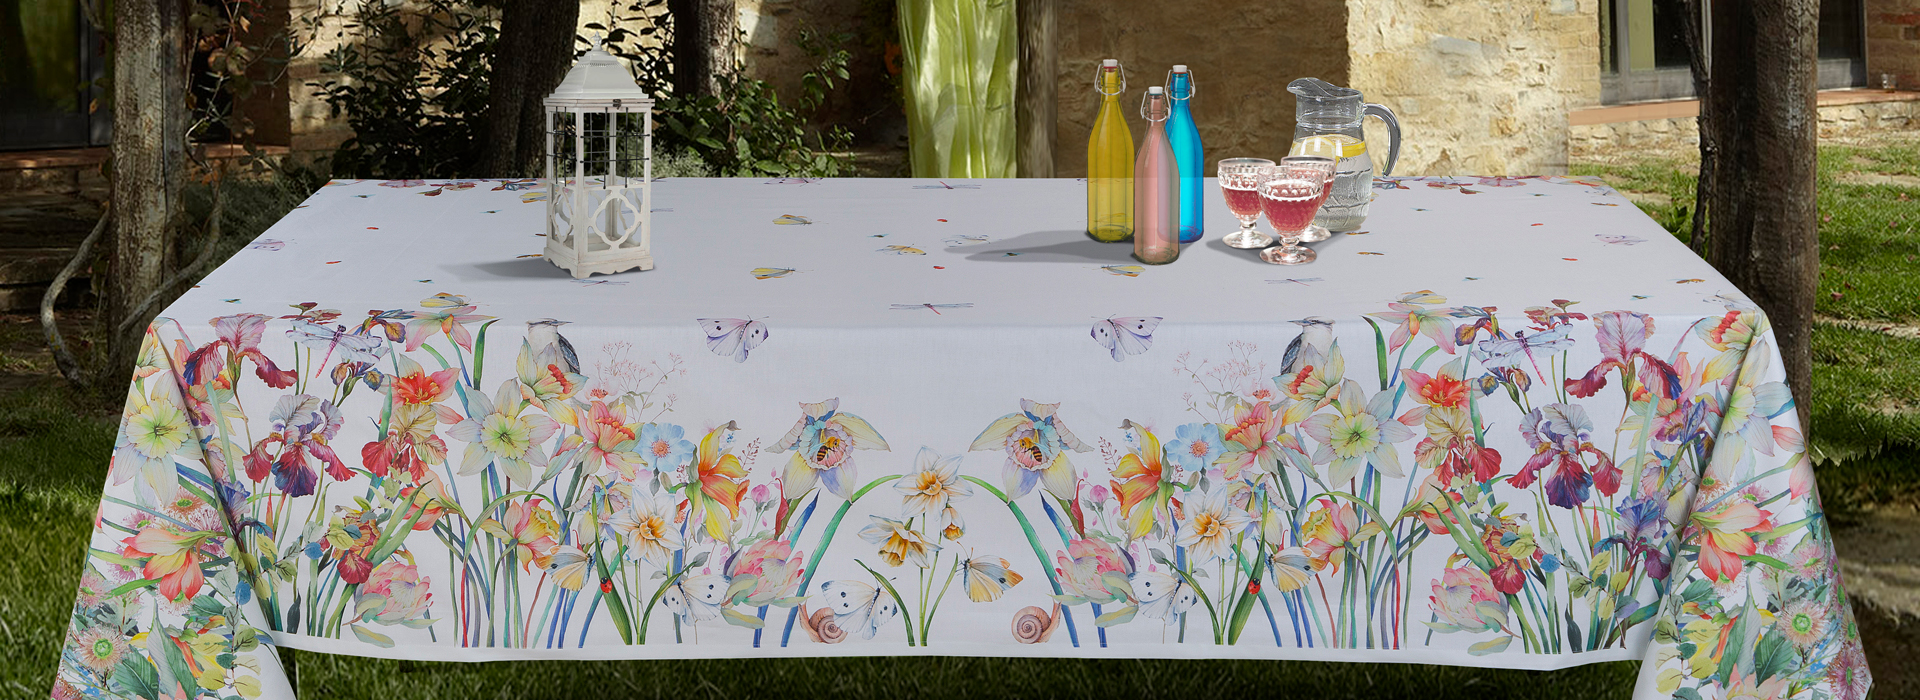 Cavalieri Spa - Set tavola, toile e accessori cucina. Tavola in giardino con toile bianca decorata con fantasia floreale.